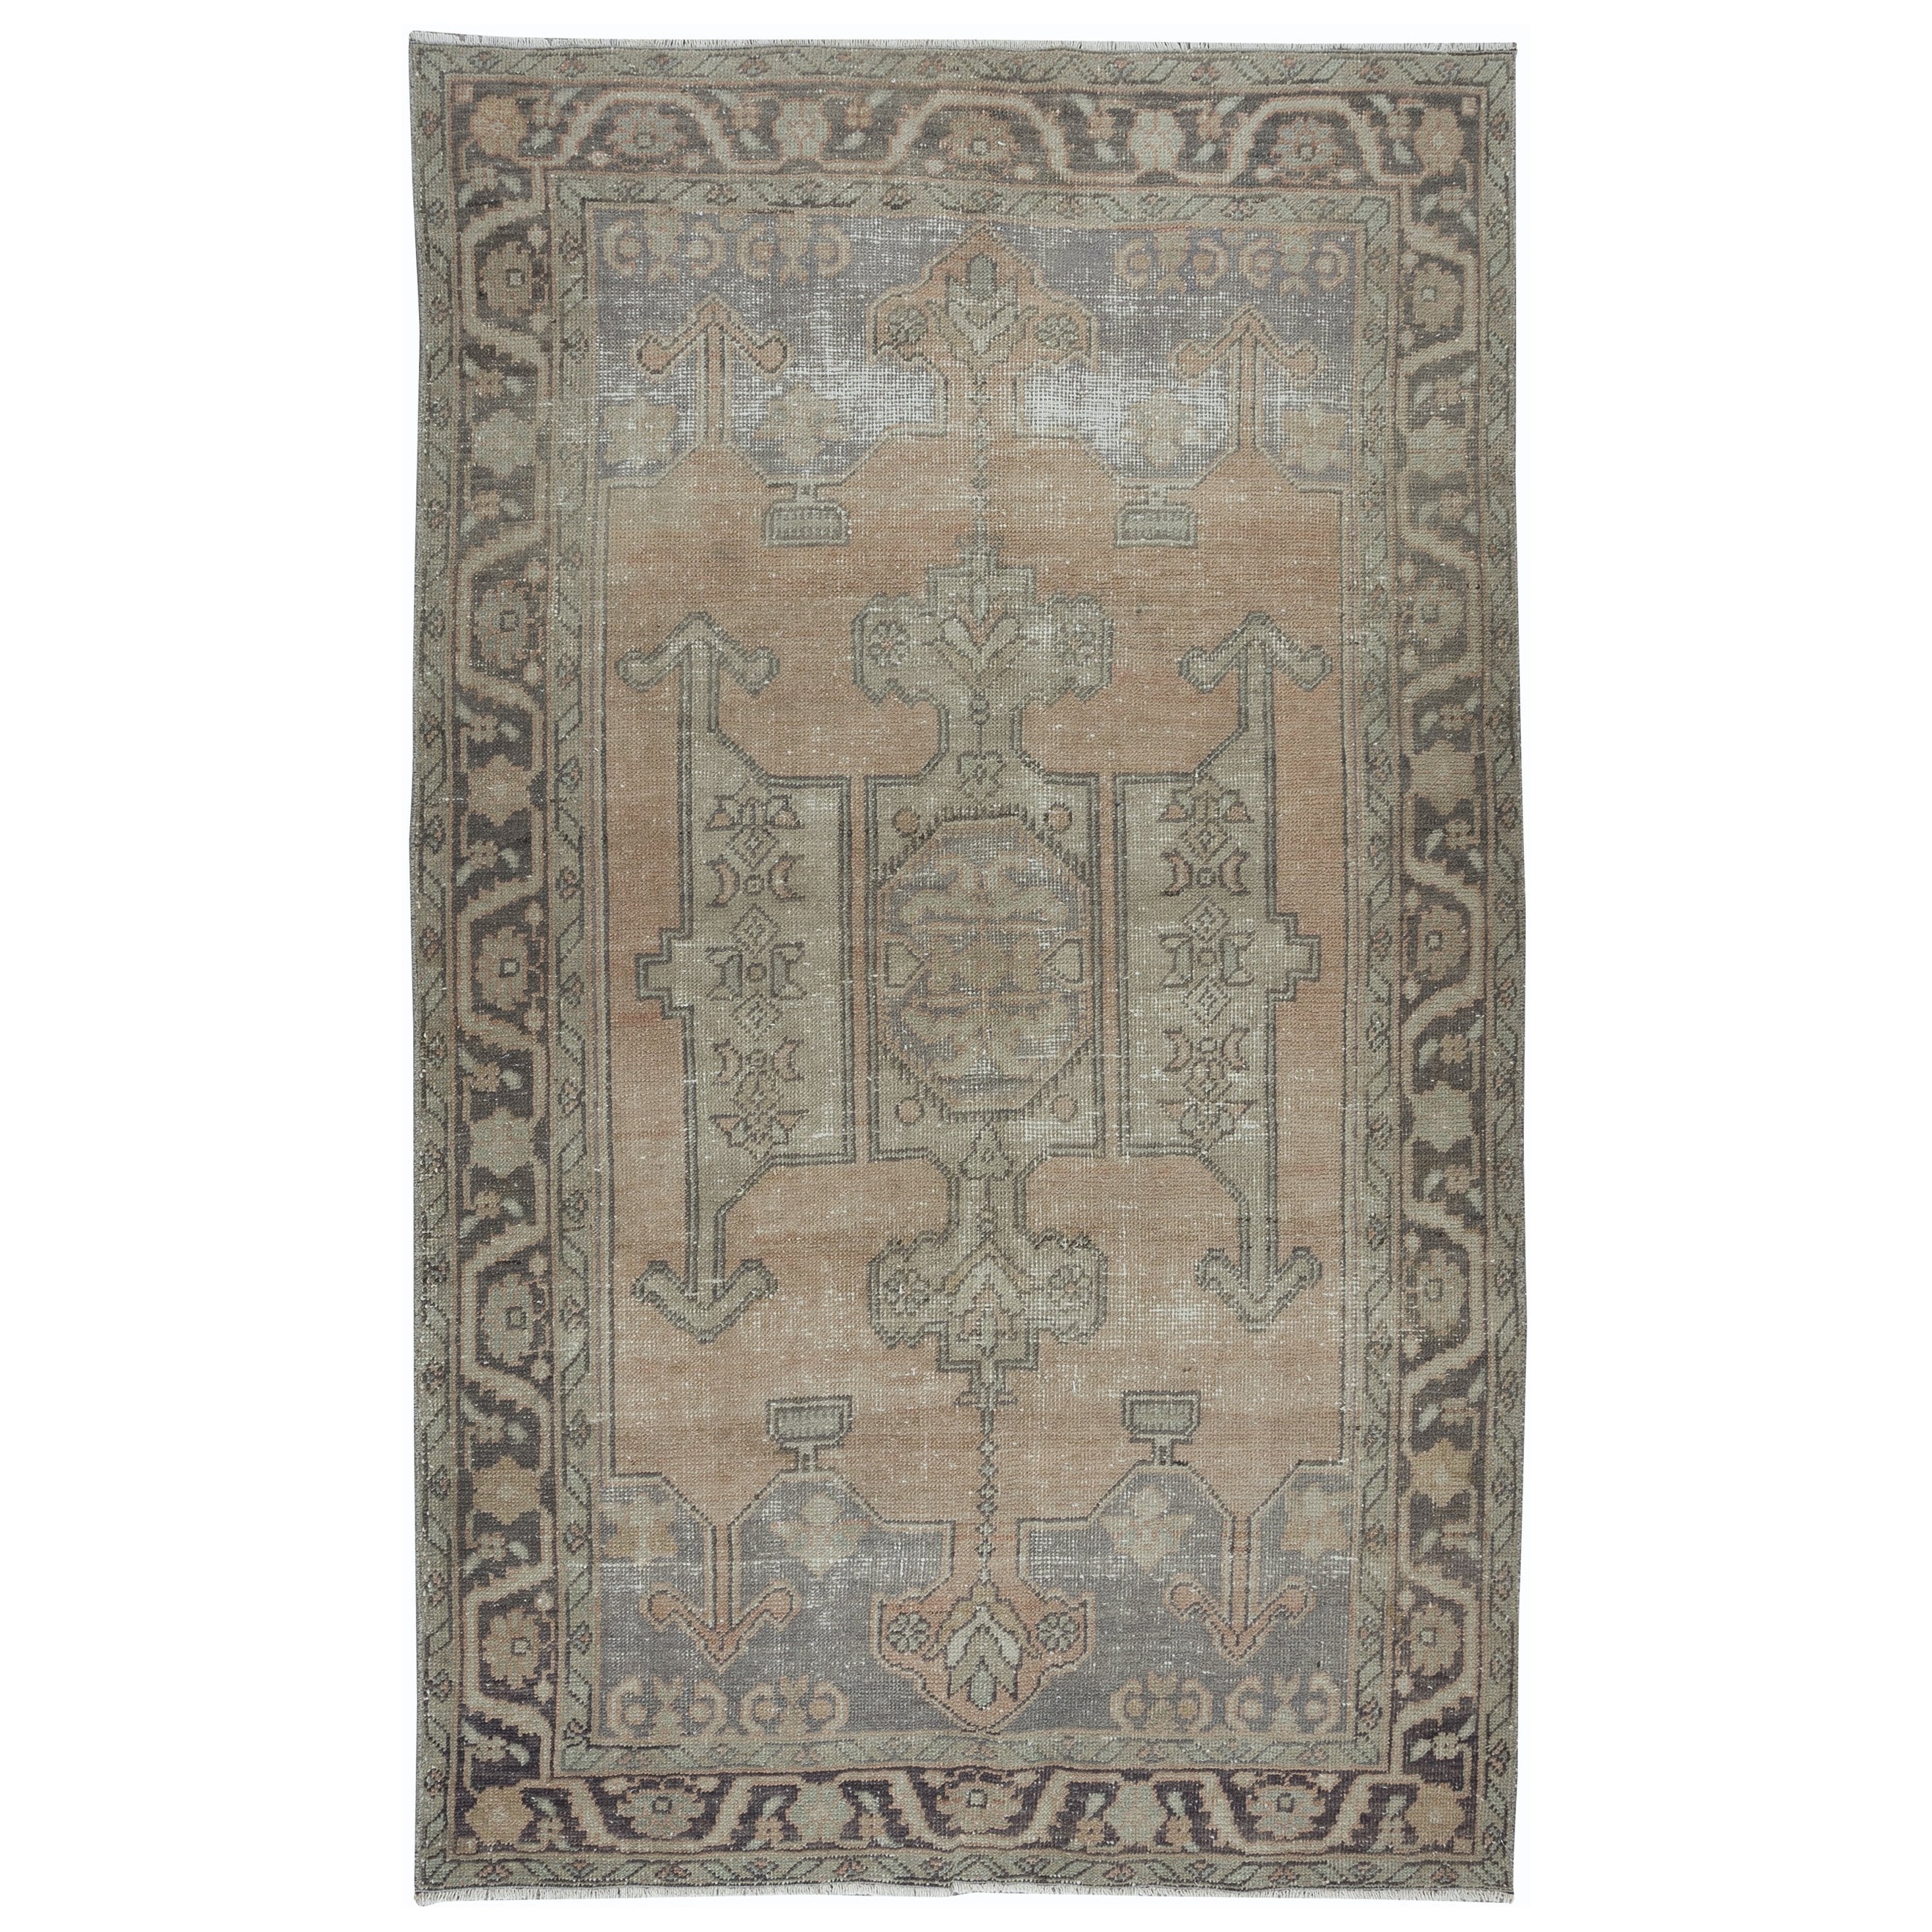 5x8,3 Ft Vintage Handgefertigter Vintage-Teppich in gedämpften Farben, Anatolischer geometrischer Wollteppich